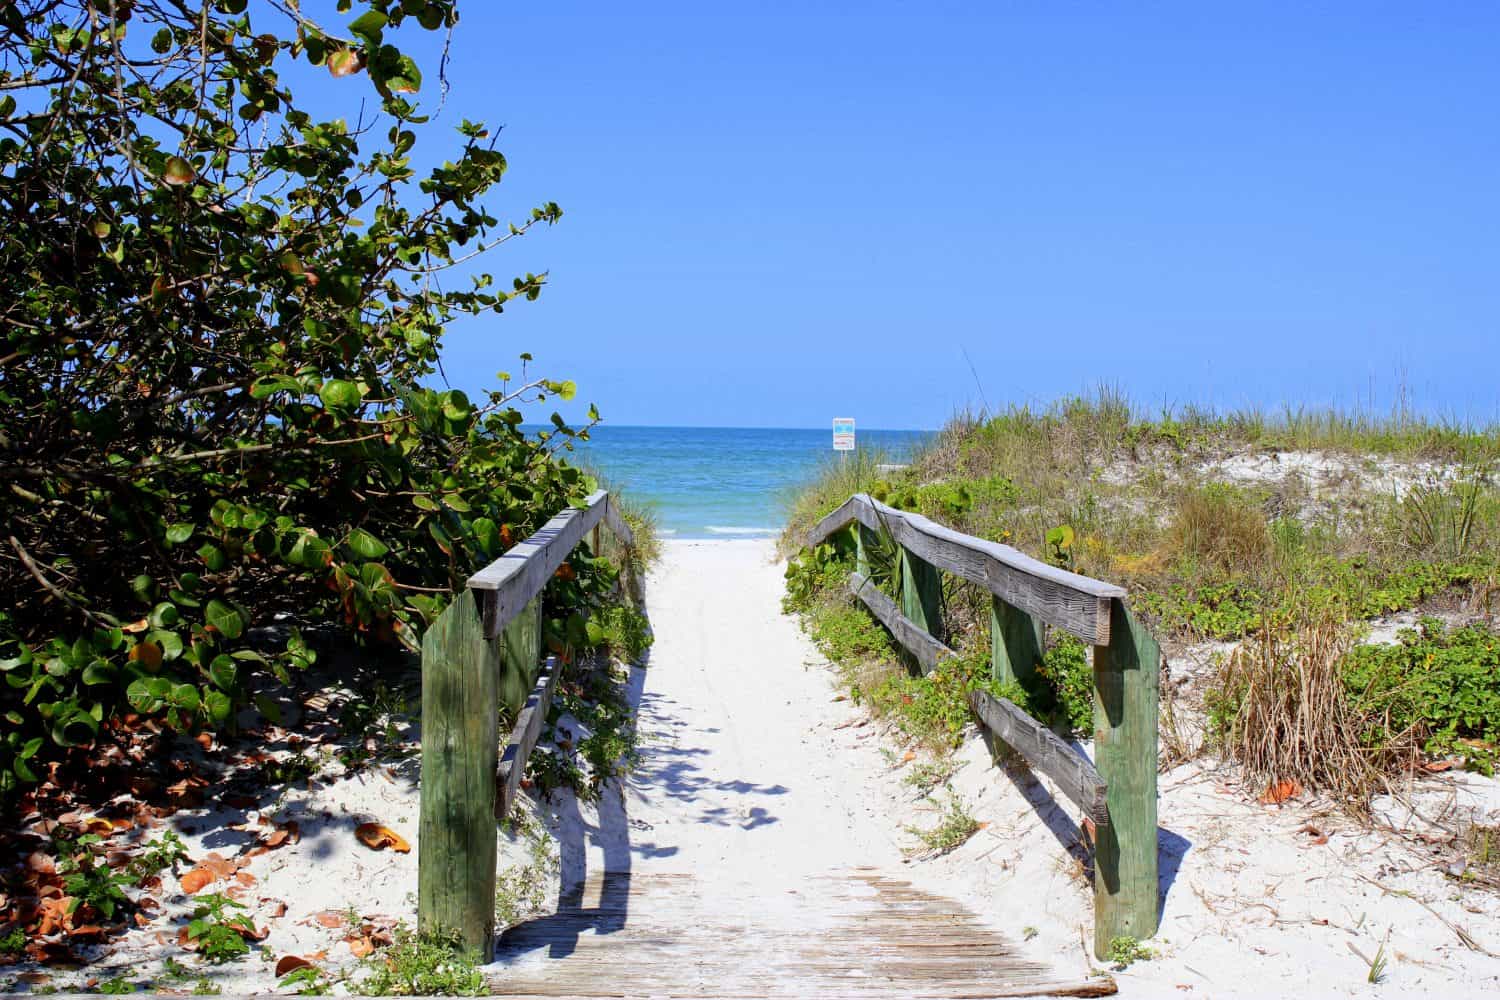 Entrance to Indian Shores beach in Florida